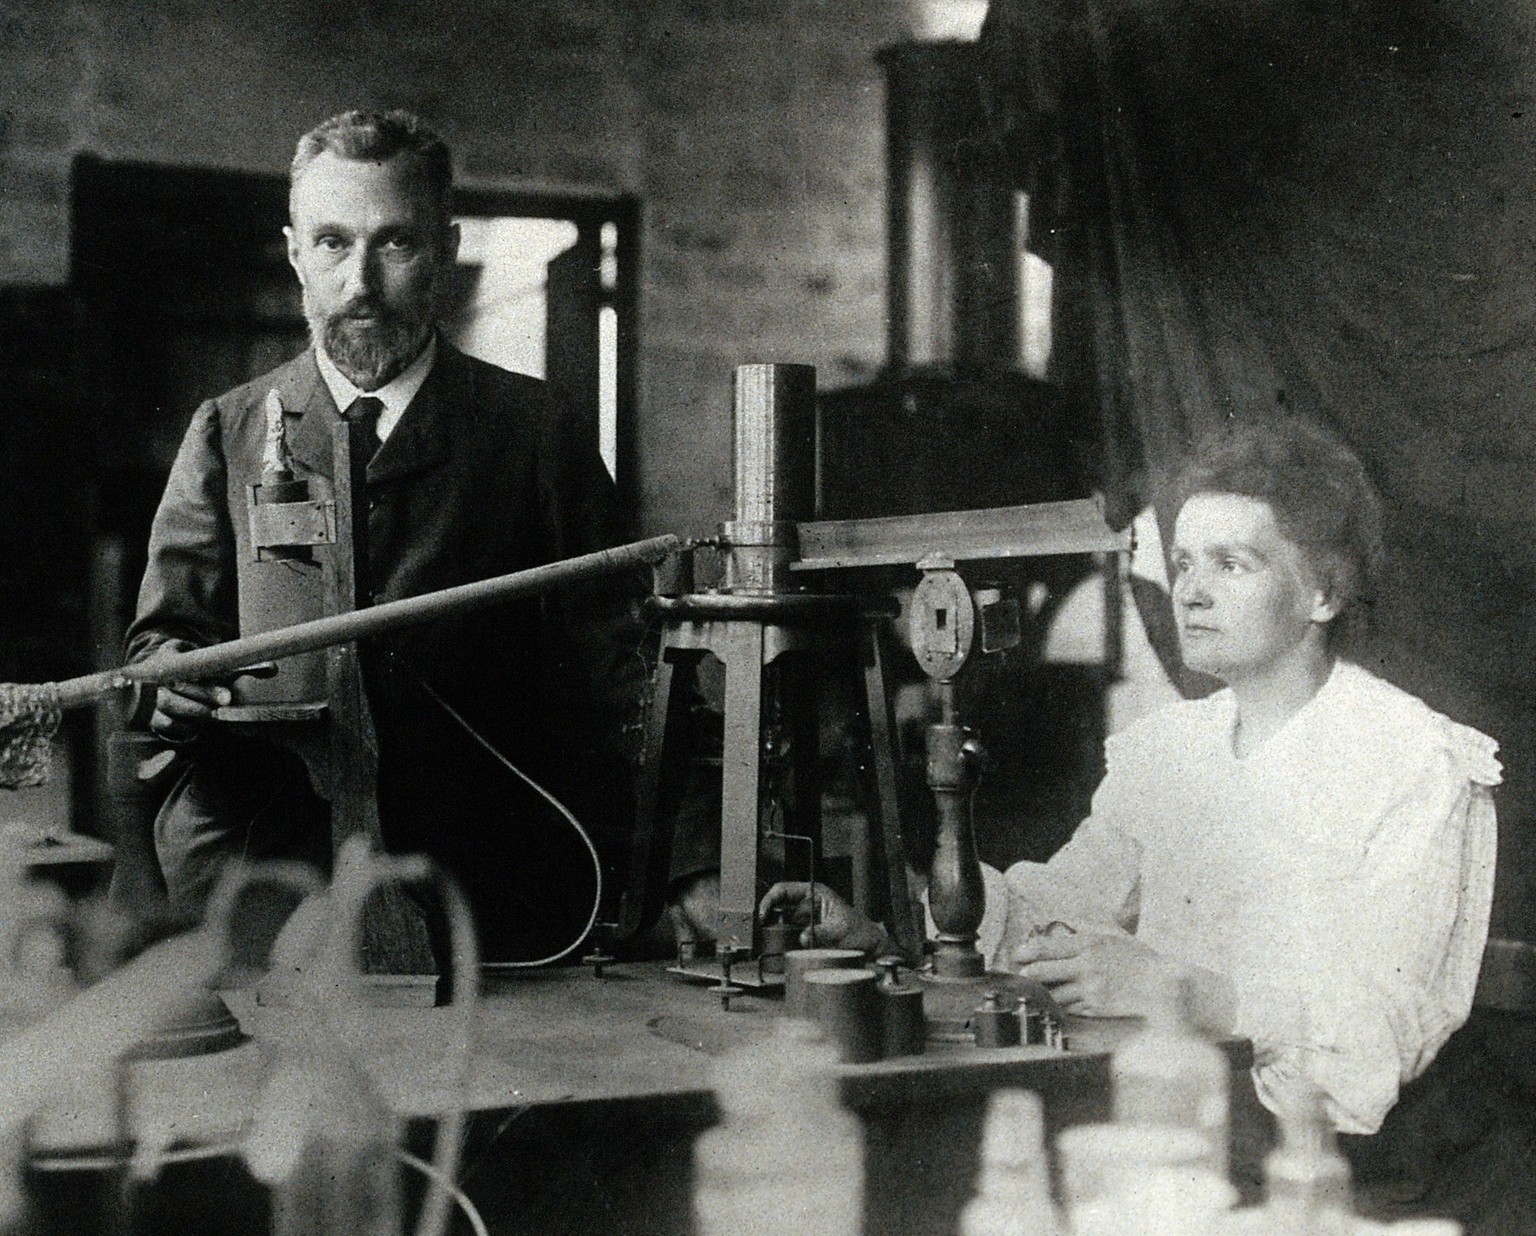 Pierre und Marie Curie in ihrem eher primitiven Labor, ca. 1904. Die Vakuumkammer der Curies war aus altem Sperrholz, aus der sie die Luft mittels Handpumpe entfernten.